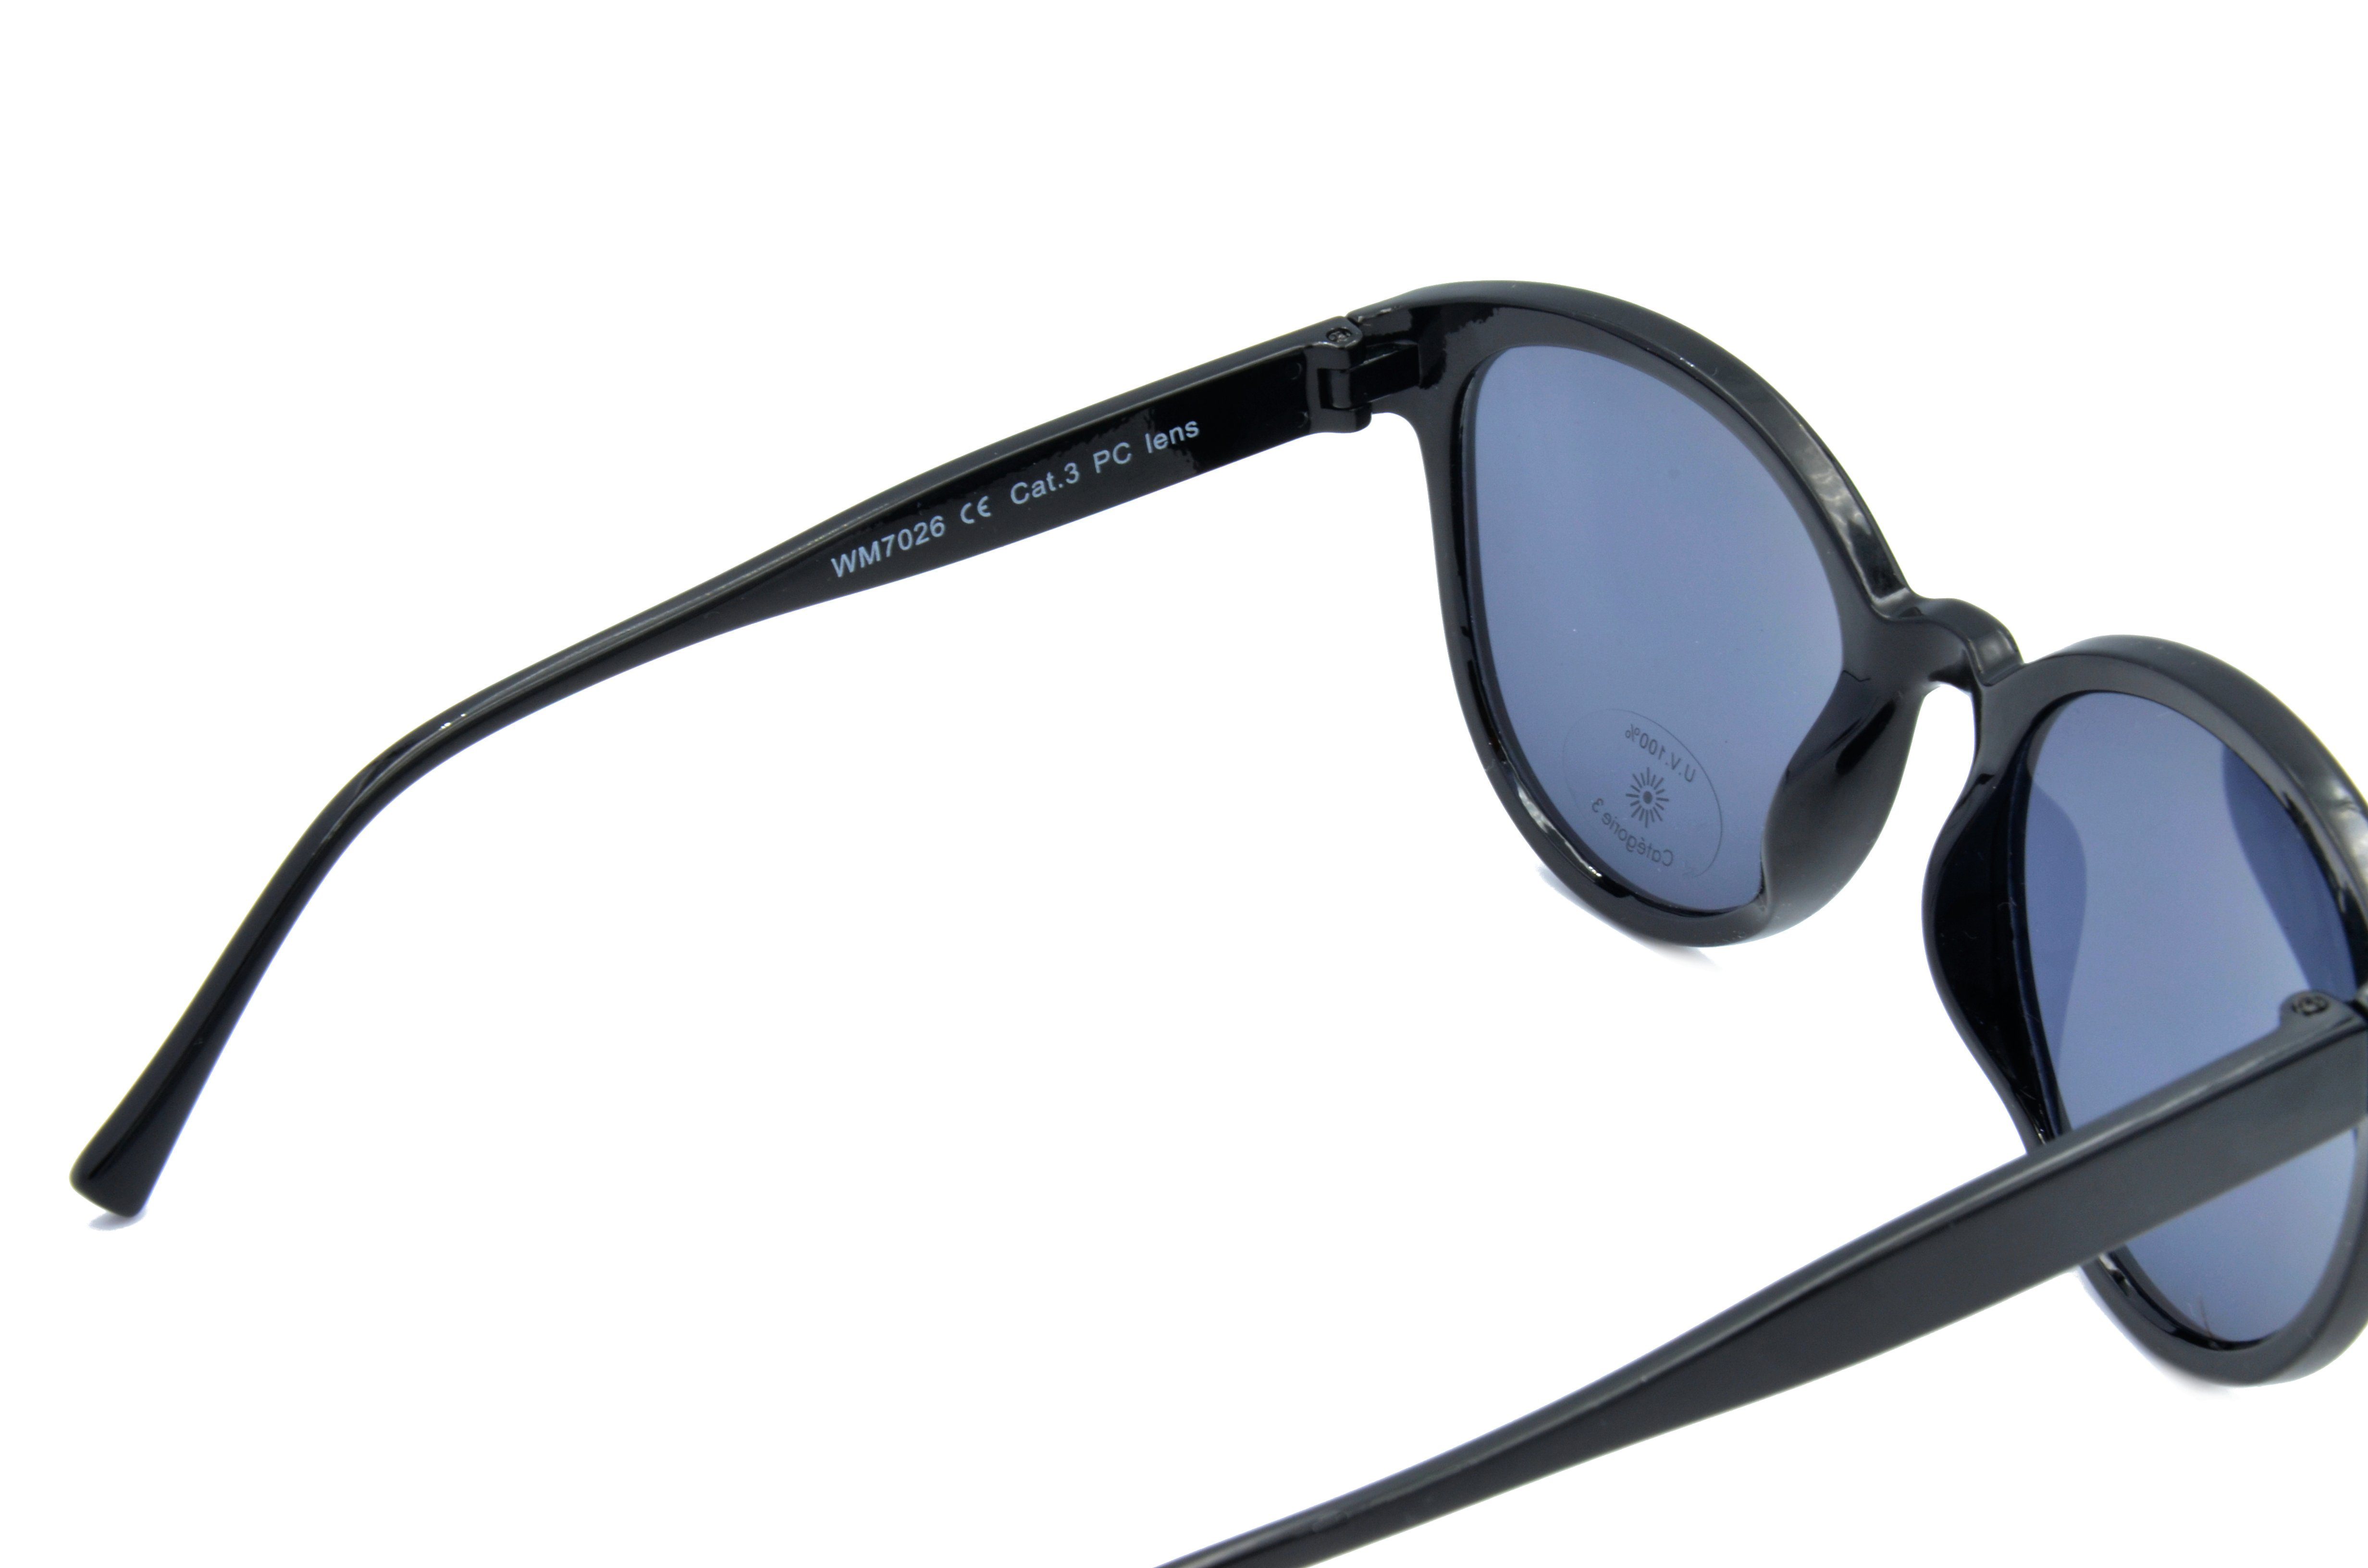 Sonnenbrille Damen Mode Brille GAMSSTYLE "Pianolackoptik", Gamswild schwarz WM7026